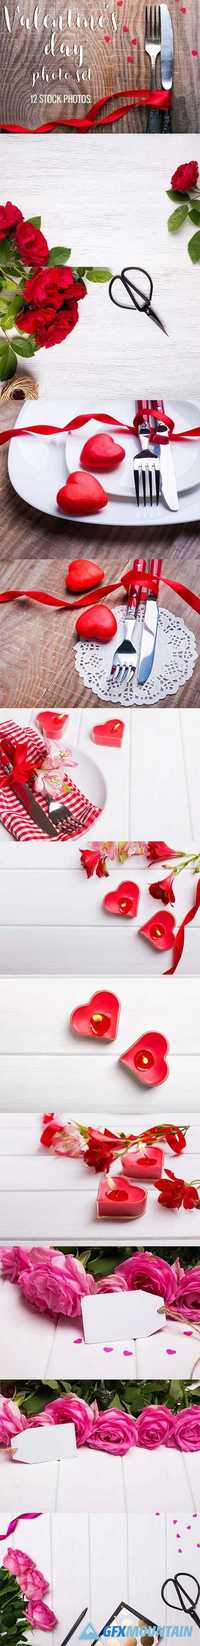 Valentine's day stock photos 1215056